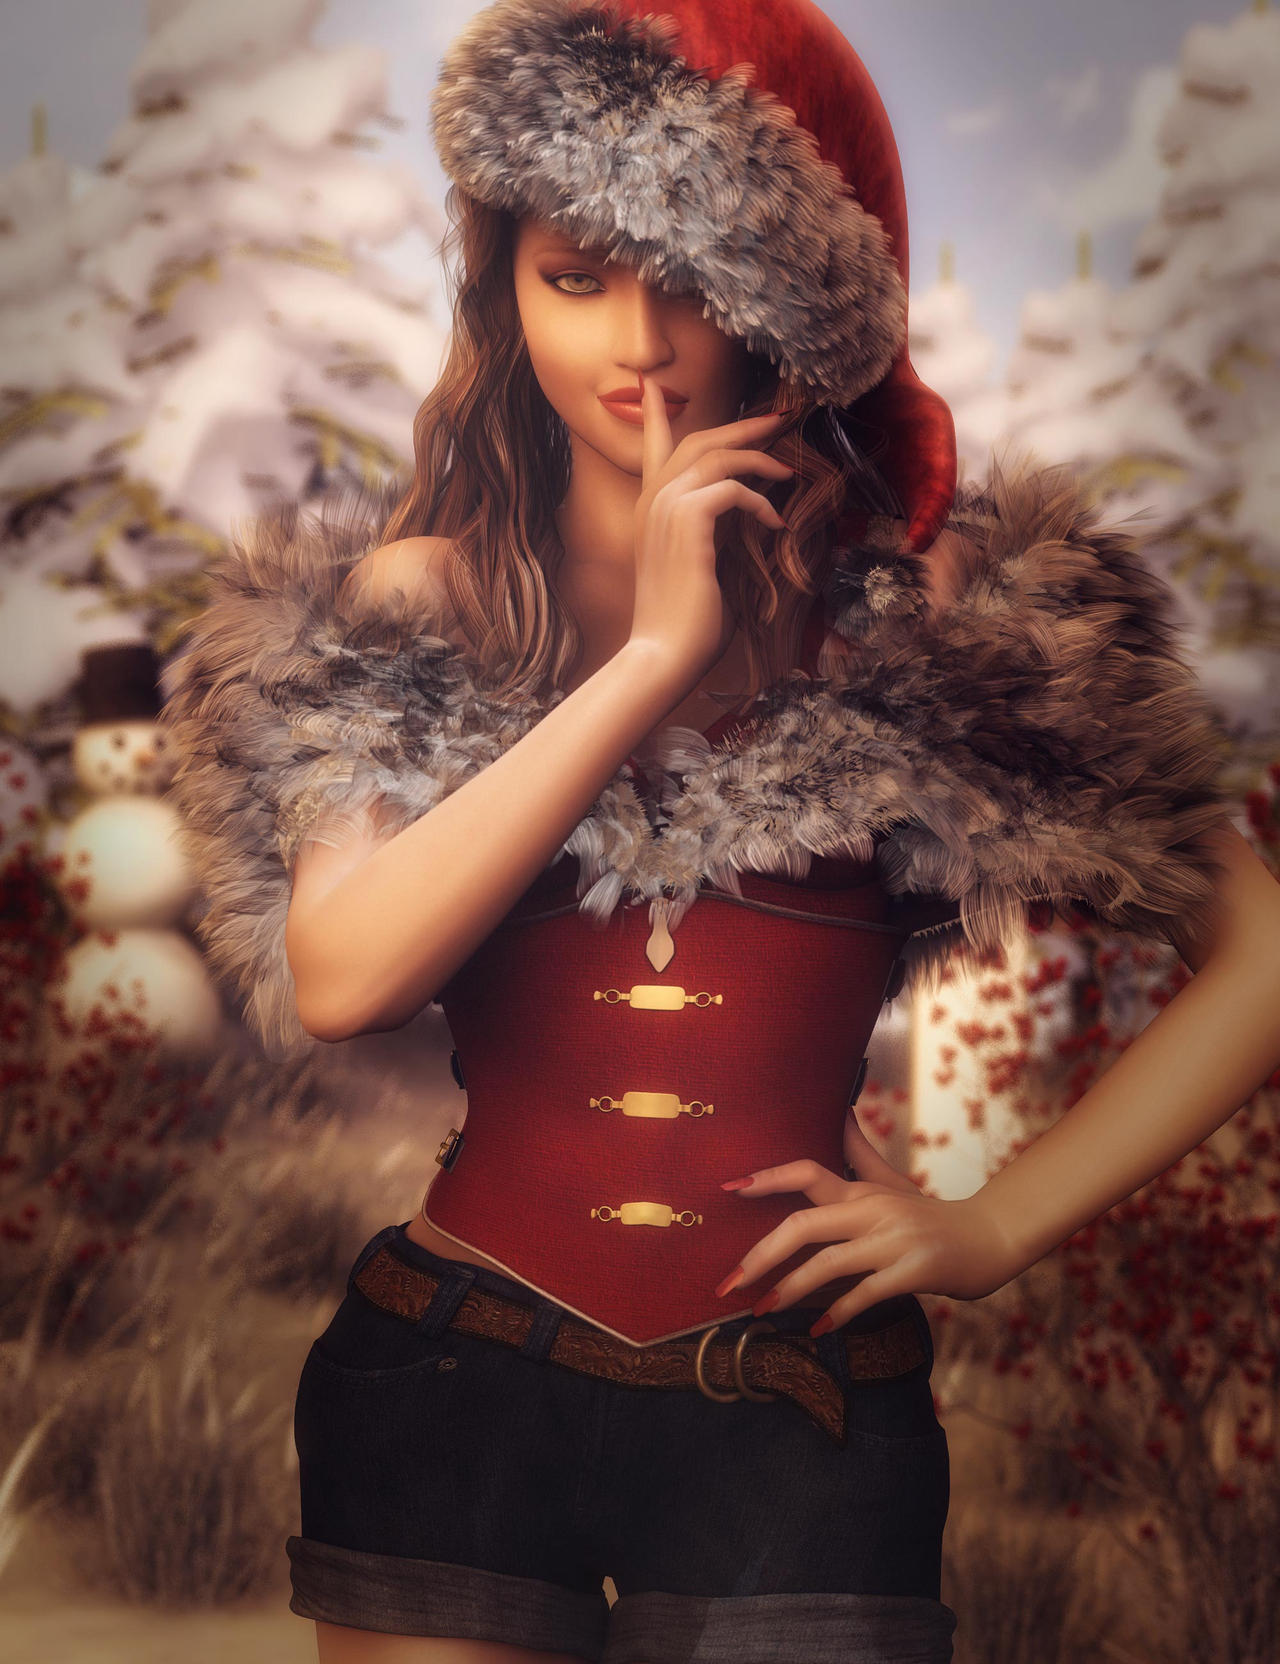 Ilustración de mujeres - Página 6 Christmas_secret__fantasy_santa_woman_art_by_shibashake_ddmgh8t-fullview.jpg?token=eyJ0eXAiOiJKV1QiLCJhbGciOiJIUzI1NiJ9.eyJzdWIiOiJ1cm46YXBwOjdlMGQxODg5ODIyNjQzNzNhNWYwZDQxNWVhMGQyNmUwIiwiaXNzIjoidXJuOmFwcDo3ZTBkMTg4OTgyMjY0MzczYTVmMGQ0MTVlYTBkMjZlMCIsIm9iaiI6W1t7ImhlaWdodCI6Ijw9MTY2NCIsInBhdGgiOiJcL2ZcL2I2NzhmZWI2LWRiNGQtNGEyNS04YzgzLWJjYTY5MTBjZmI2YlwvZGRtZ2g4dC1lZjg2OWMxNS05MTRmLTRlNDktOTMxZS0wMzFmNWZkNzczM2IuanBnIiwid2lkdGgiOiI8PTEyODAifV1dLCJhdWQiOlsidXJuOnNlcnZpY2U6aW1hZ2Uub3BlcmF0aW9ucyJdfQ